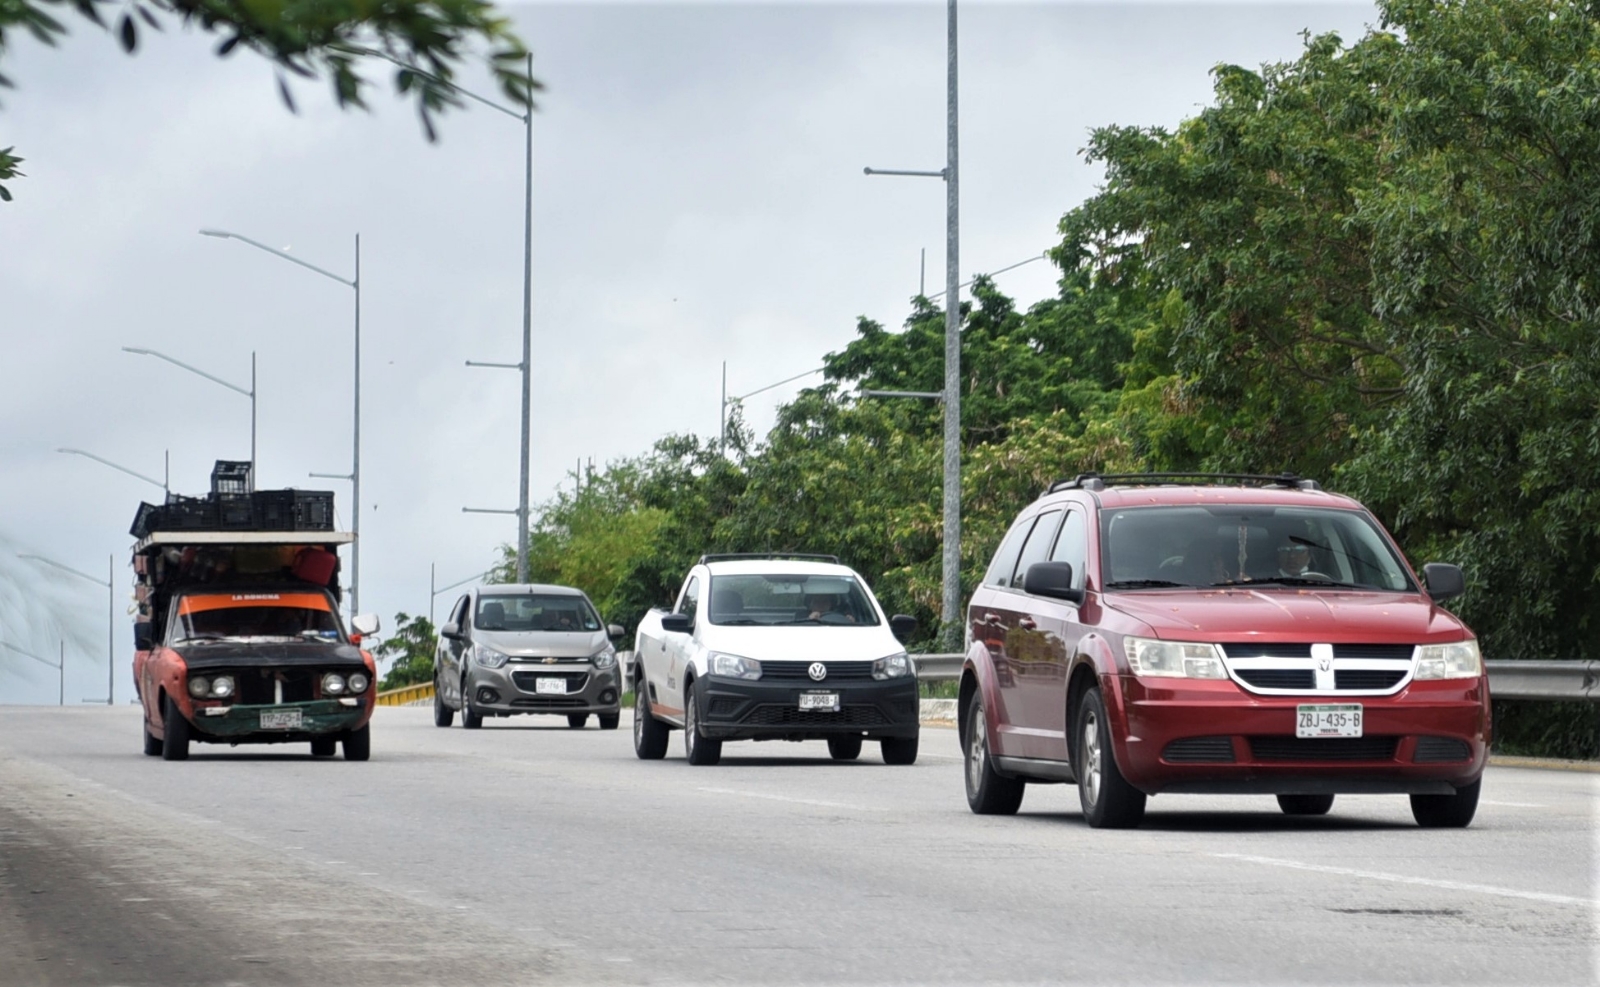 Vehículos foráneos 'invaden' las calles de Yucatán: SSP